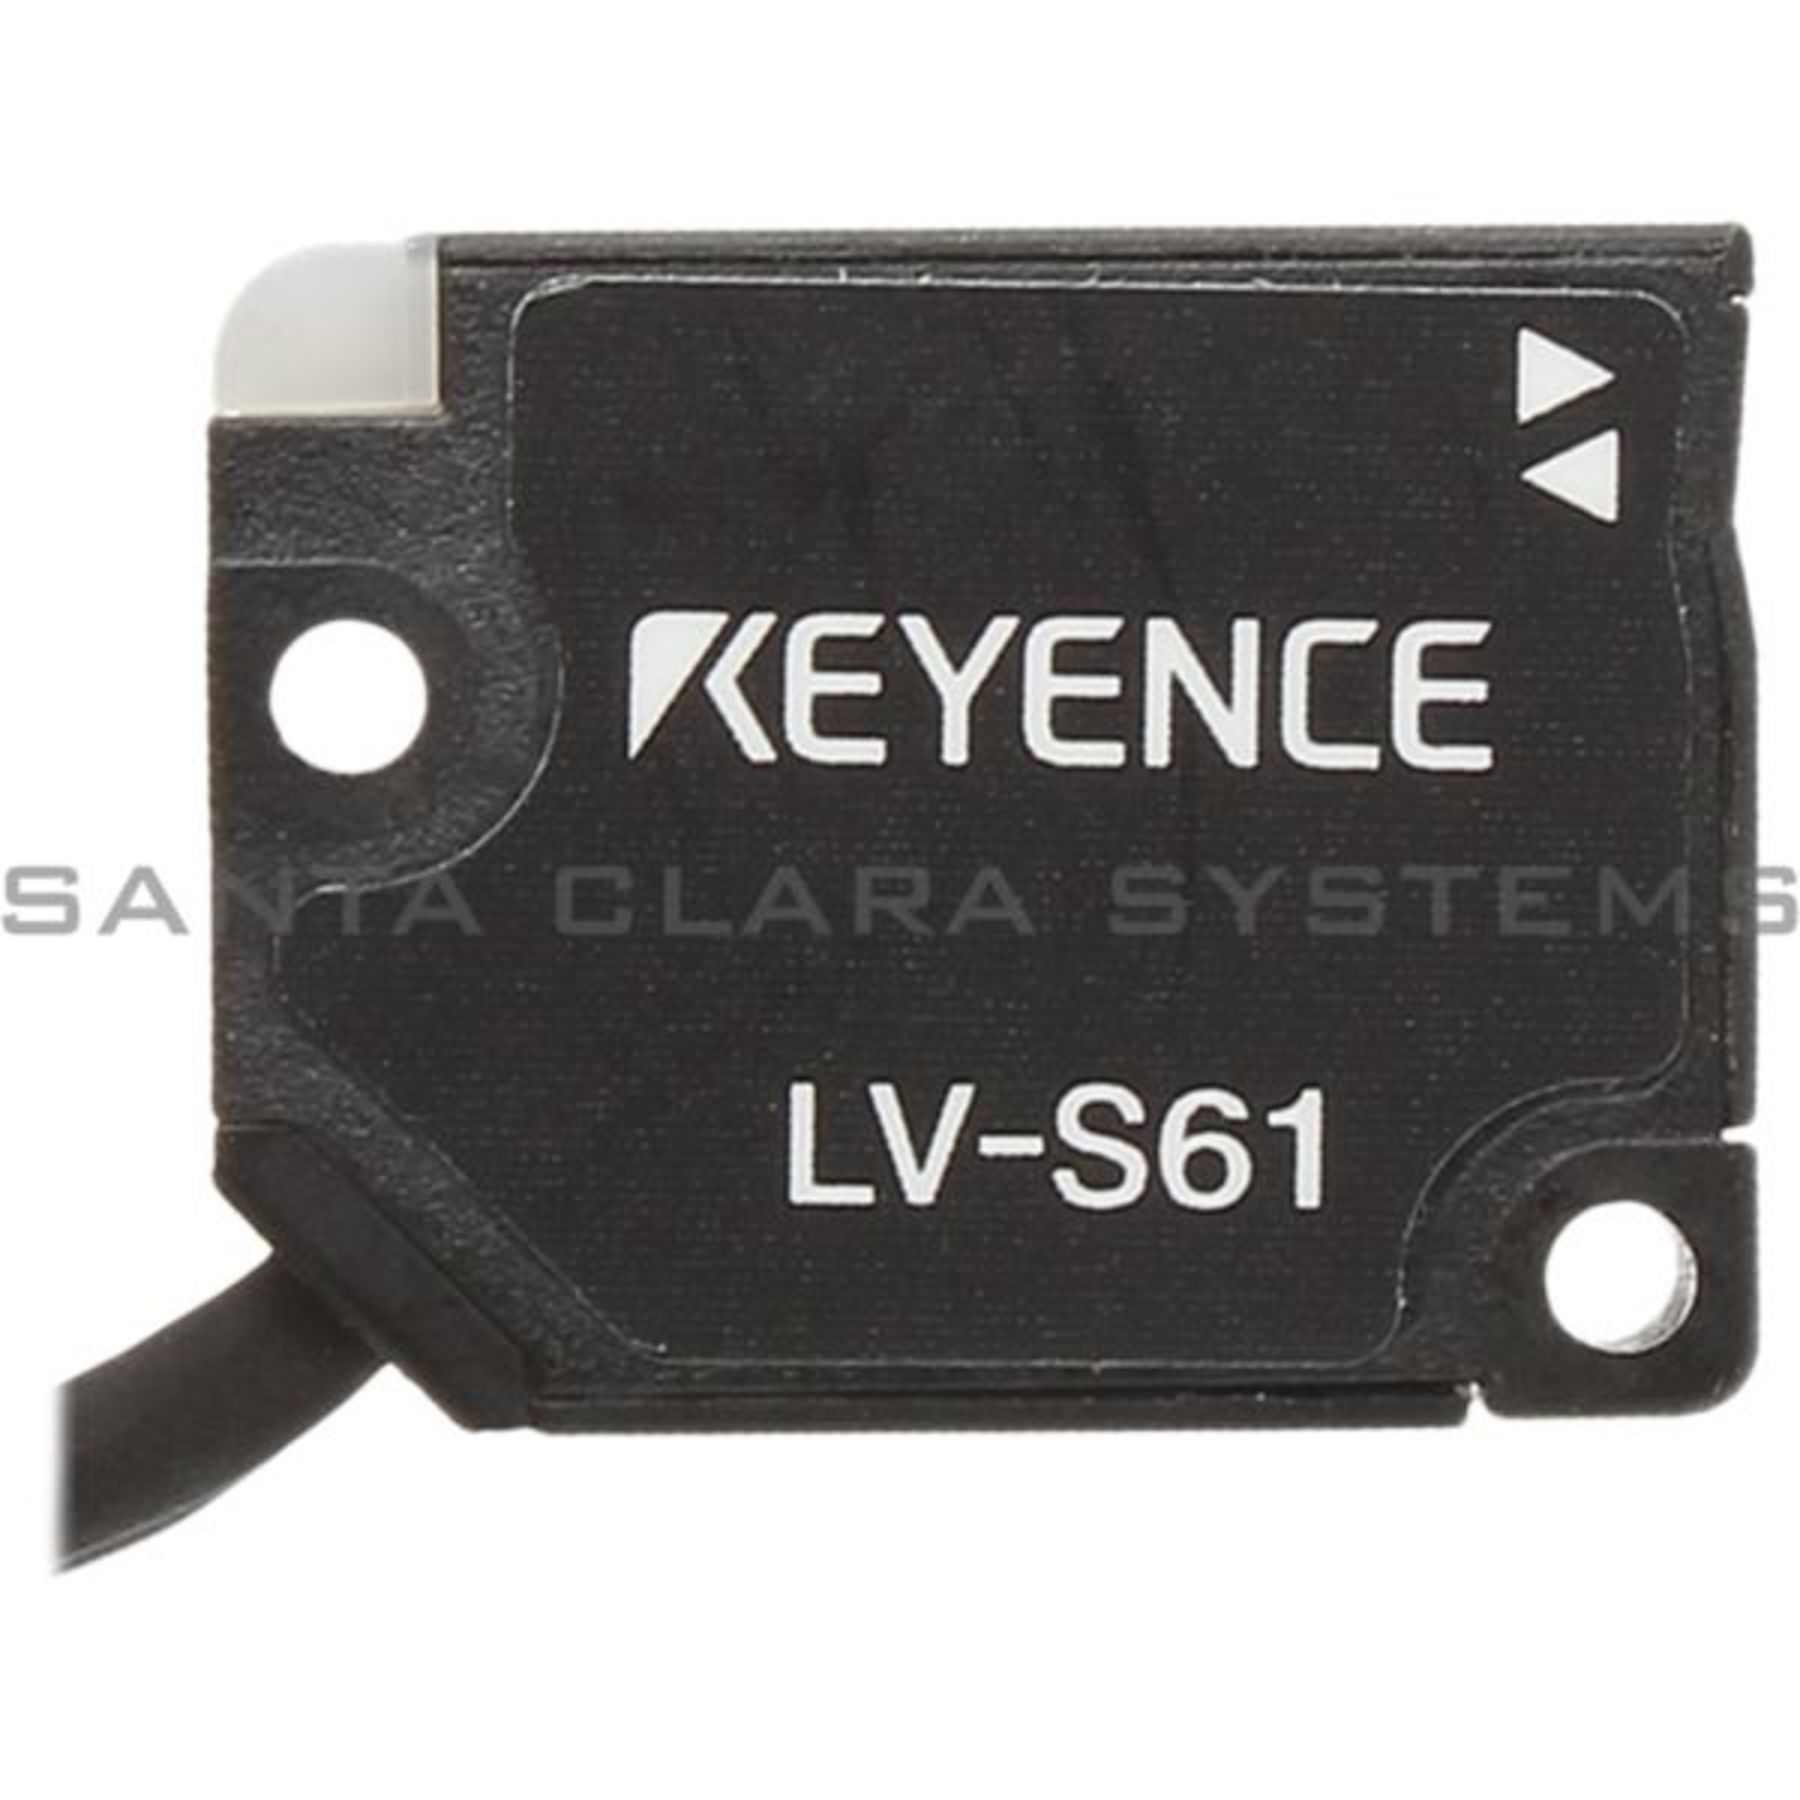 LV-S61 Keyence In stock and ready to ship - Santa Clara Systems